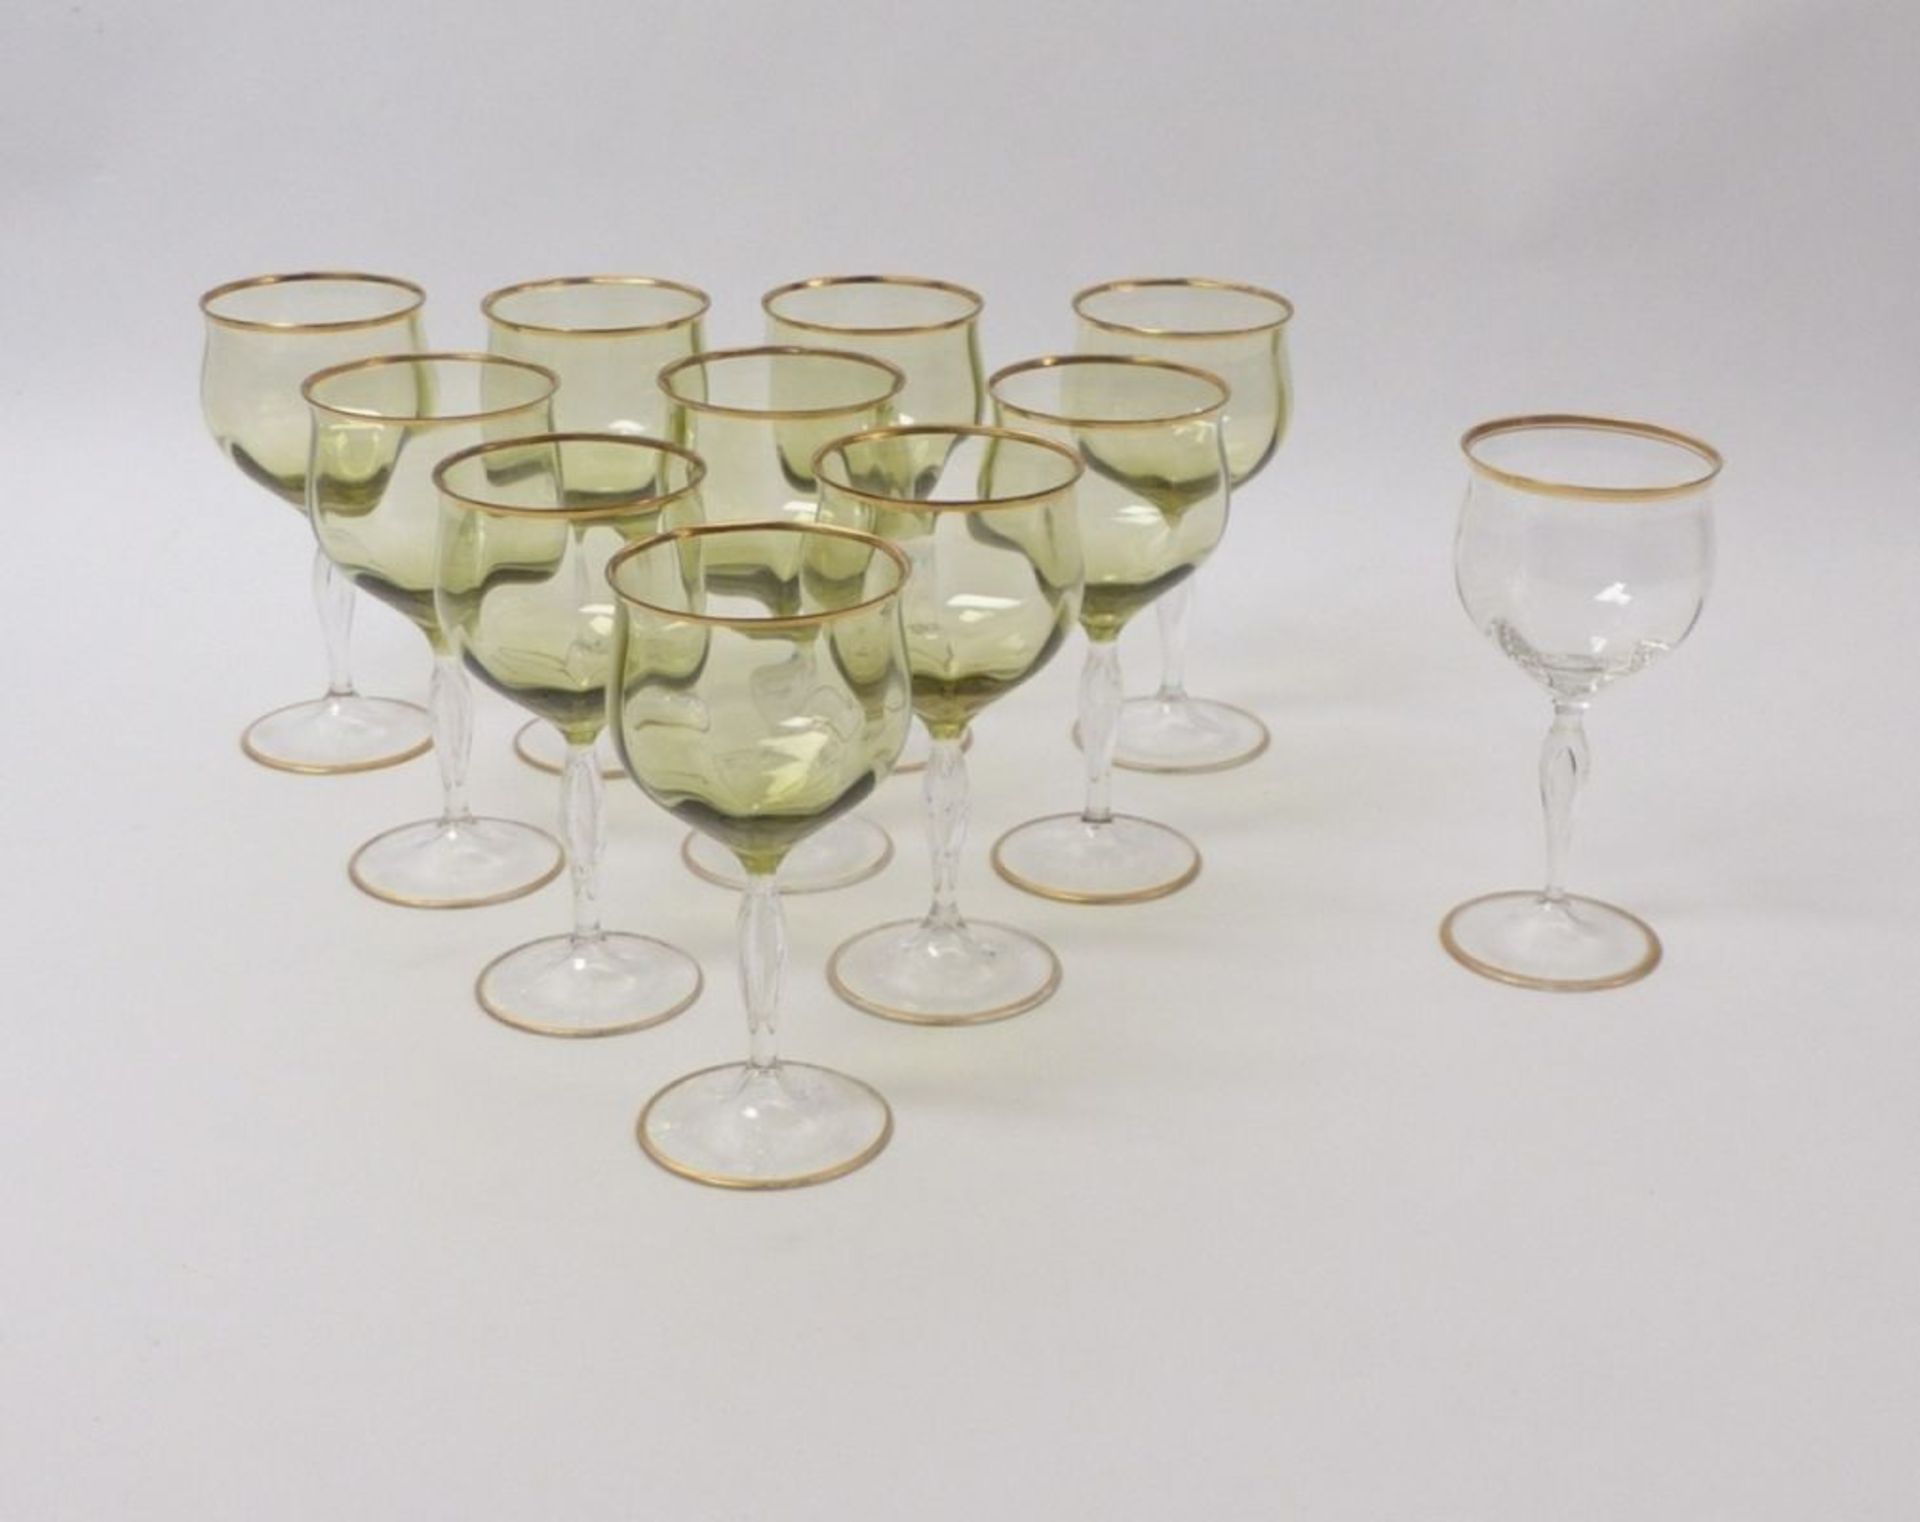 Eleven wine or aperitif glasses